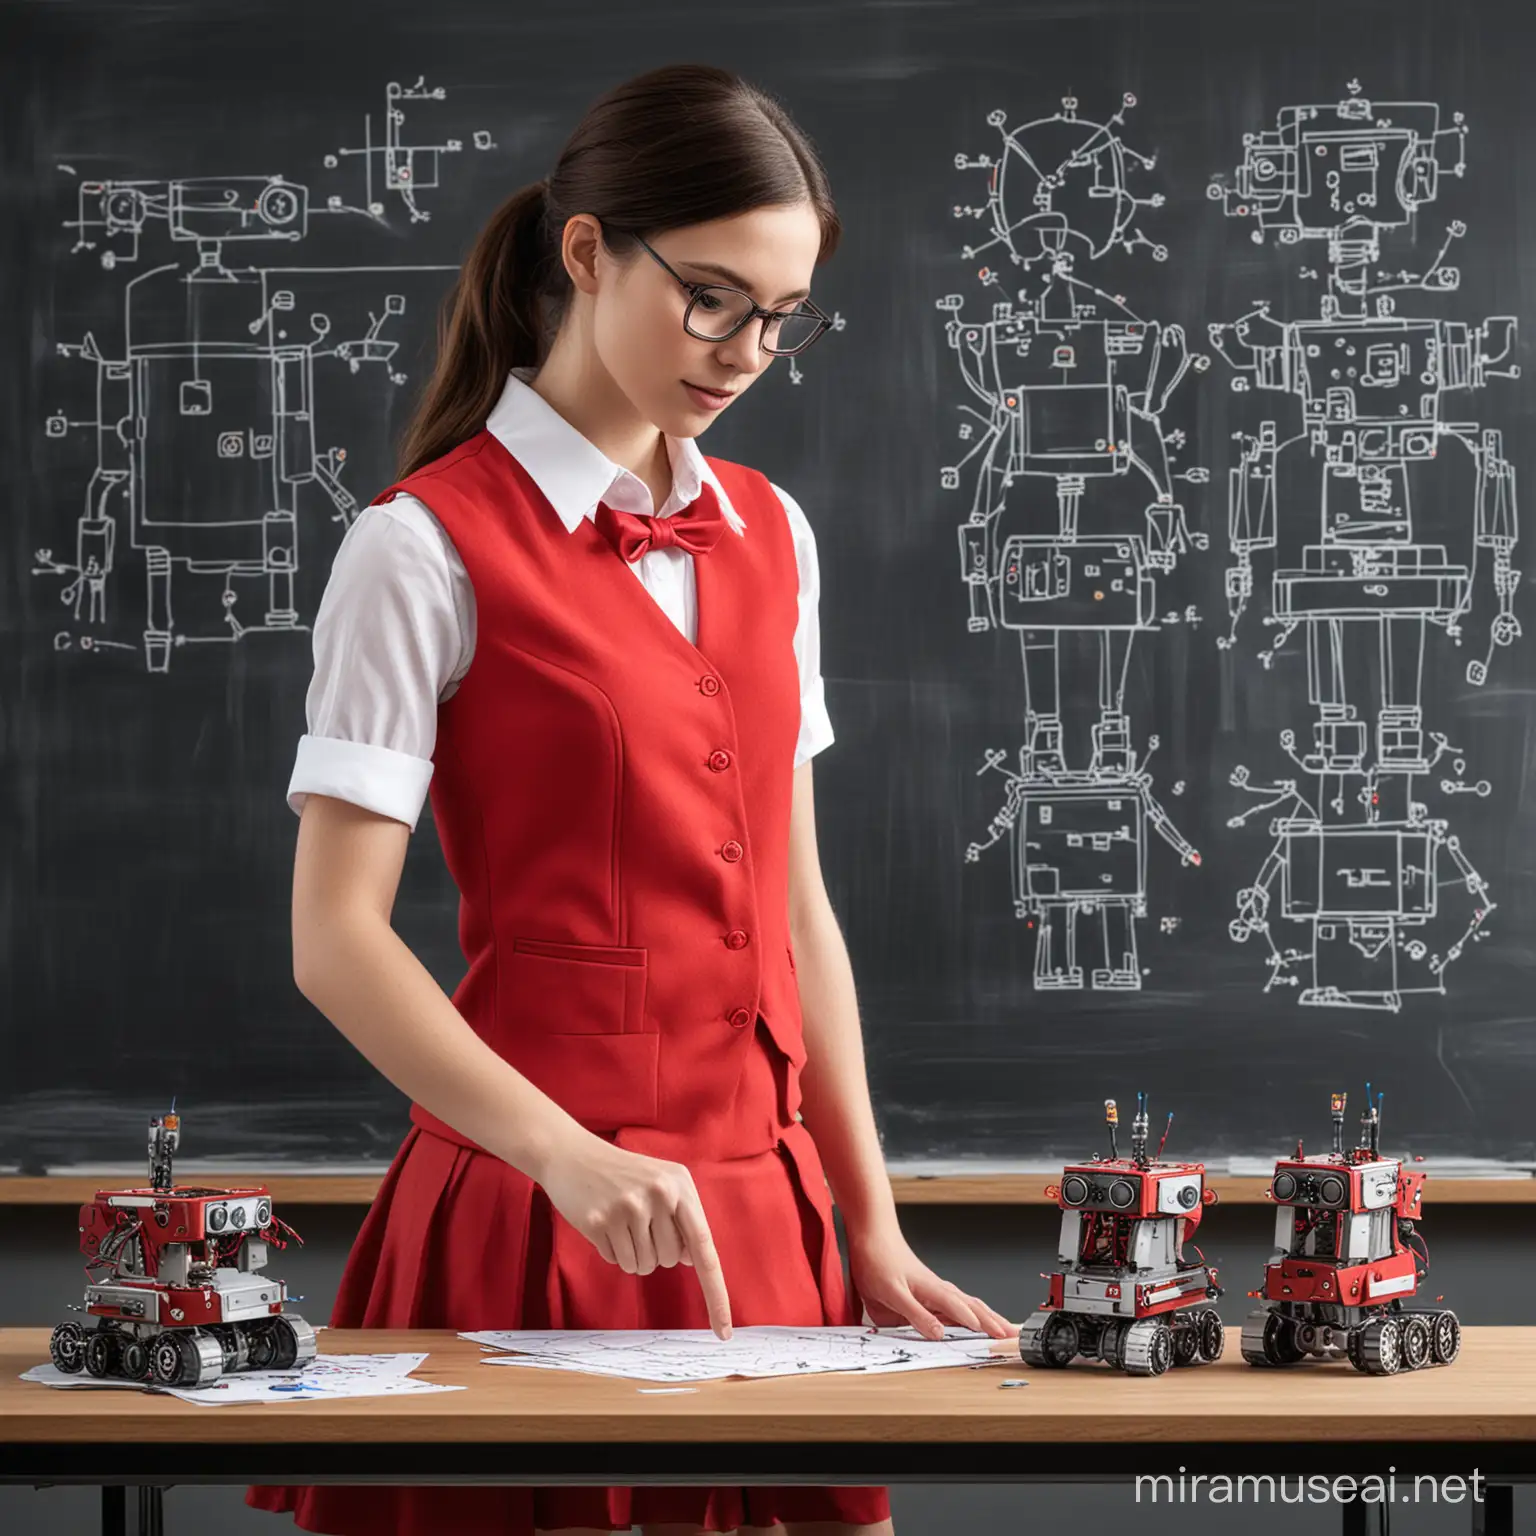 crear una imagen de publicidad que se vean solo señoritas vestidas de falda roja chaleco rojo y camisa blanca, en una mesa colocar proyectos de electronica y en el pizarron el dibujo de un robot desarmado